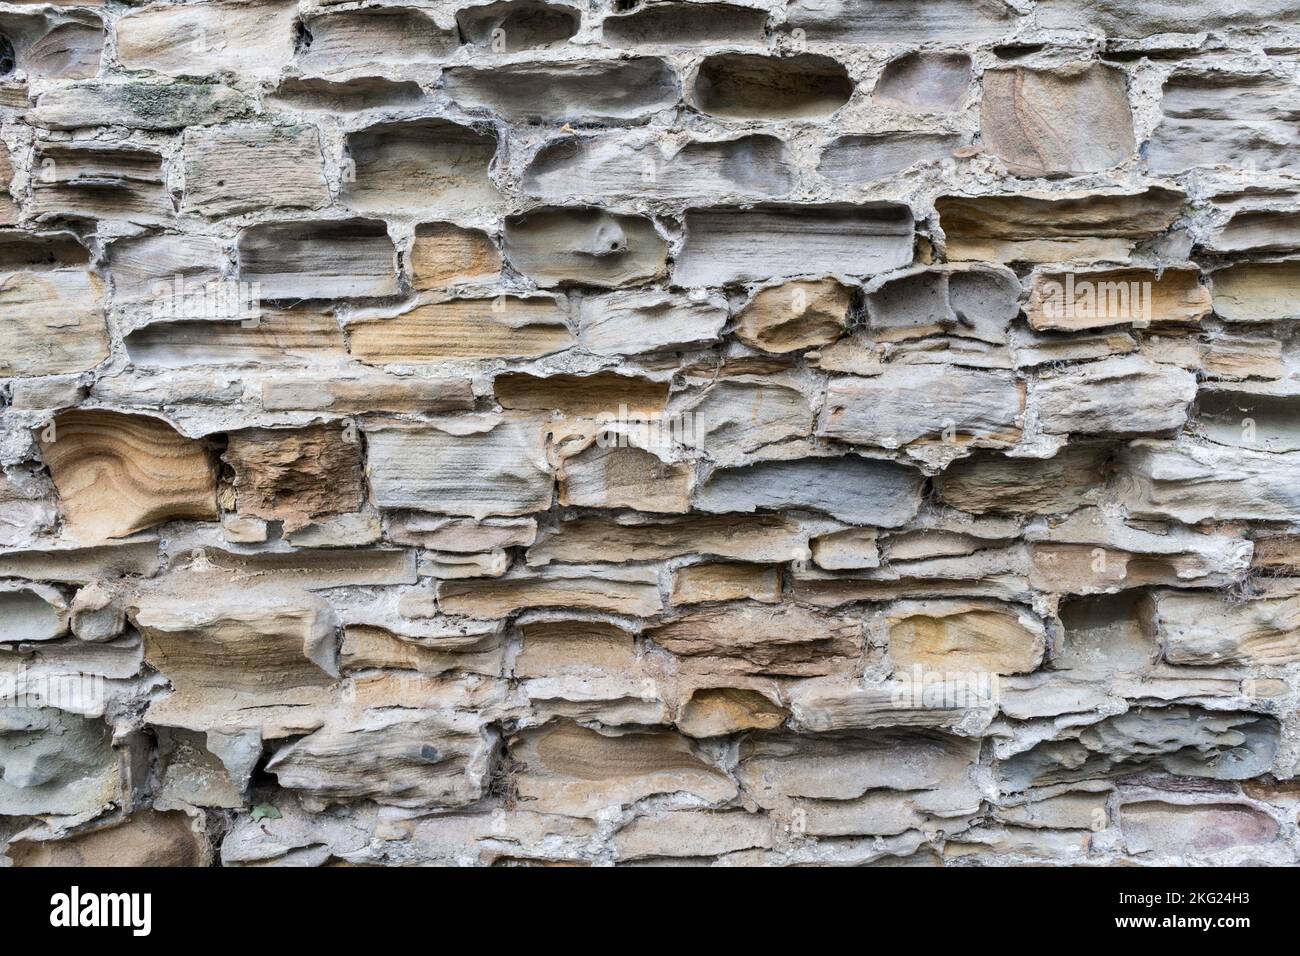 Un viejo muro de piedra que ha sido muy erosionado Foto de stock